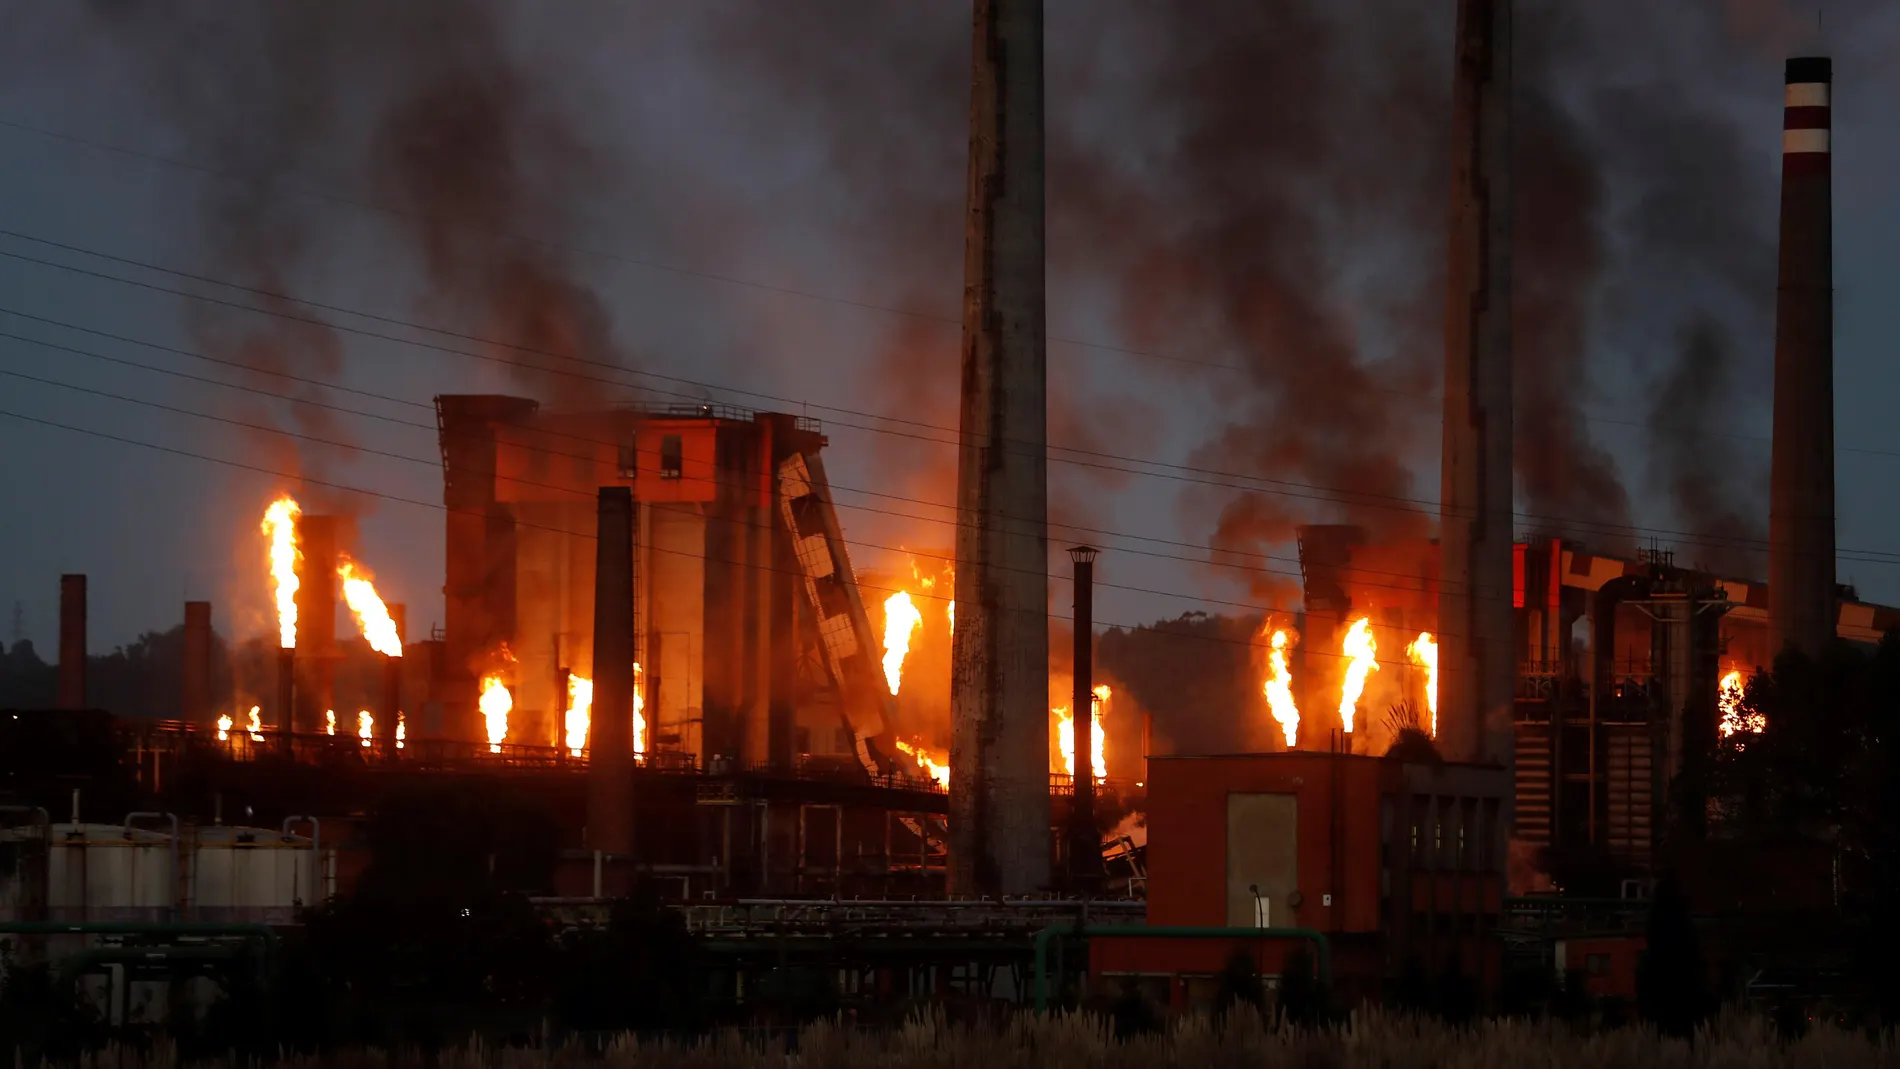 vista del incendio industrial declarado en las baterías de coque de la multinacional siderúrgica ArcelorMittal